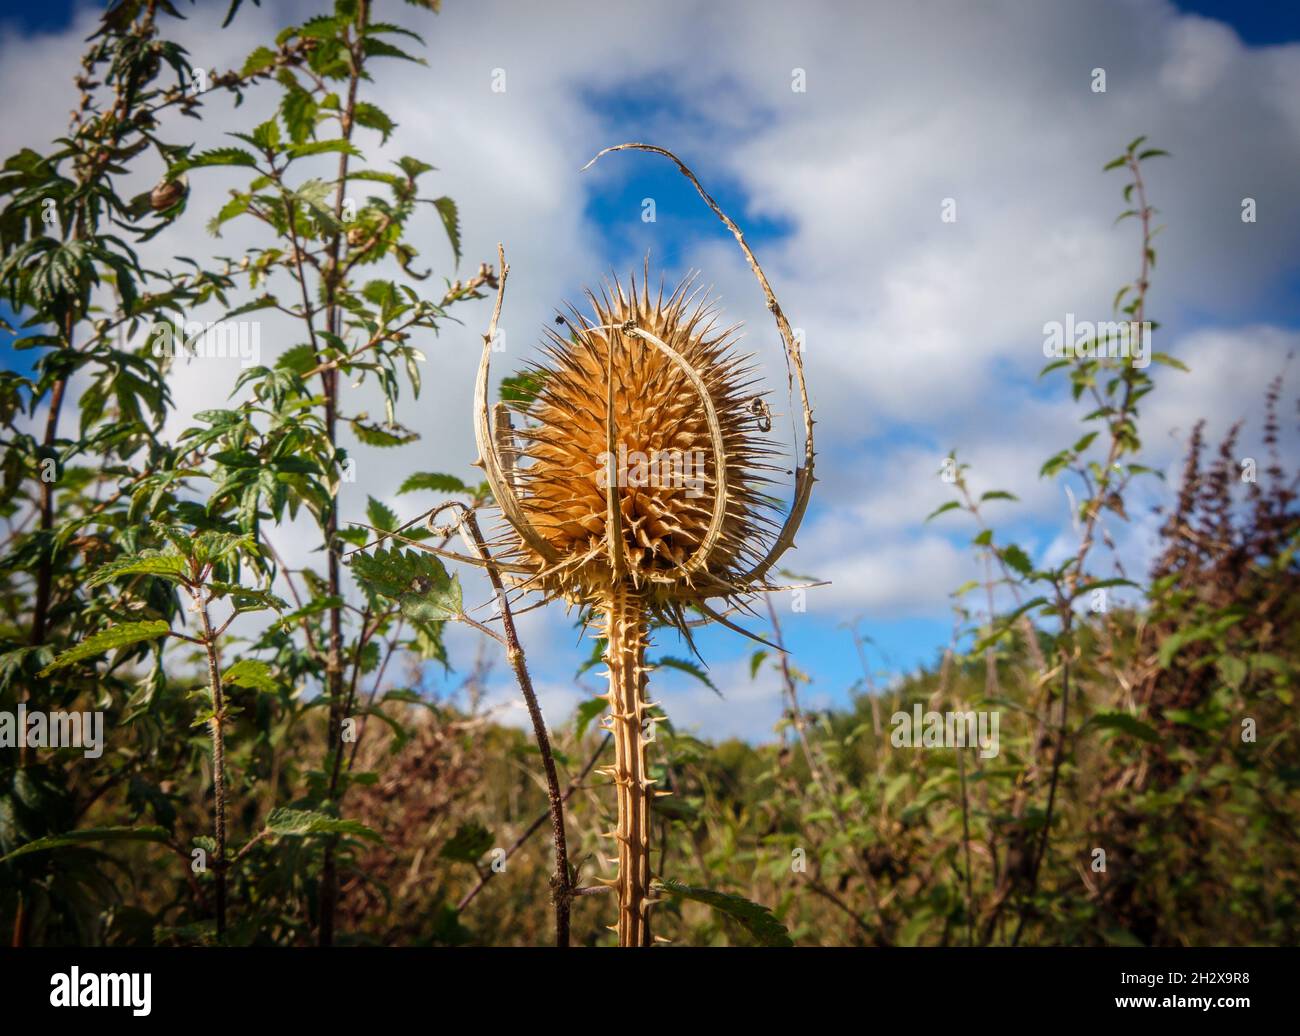 Il tazzino selvatico marrone dorato (Dipsacus fullonum) il thistle spiky prickly autunnale posto contro il cielo blu e le nuvole bianche Foto Stock